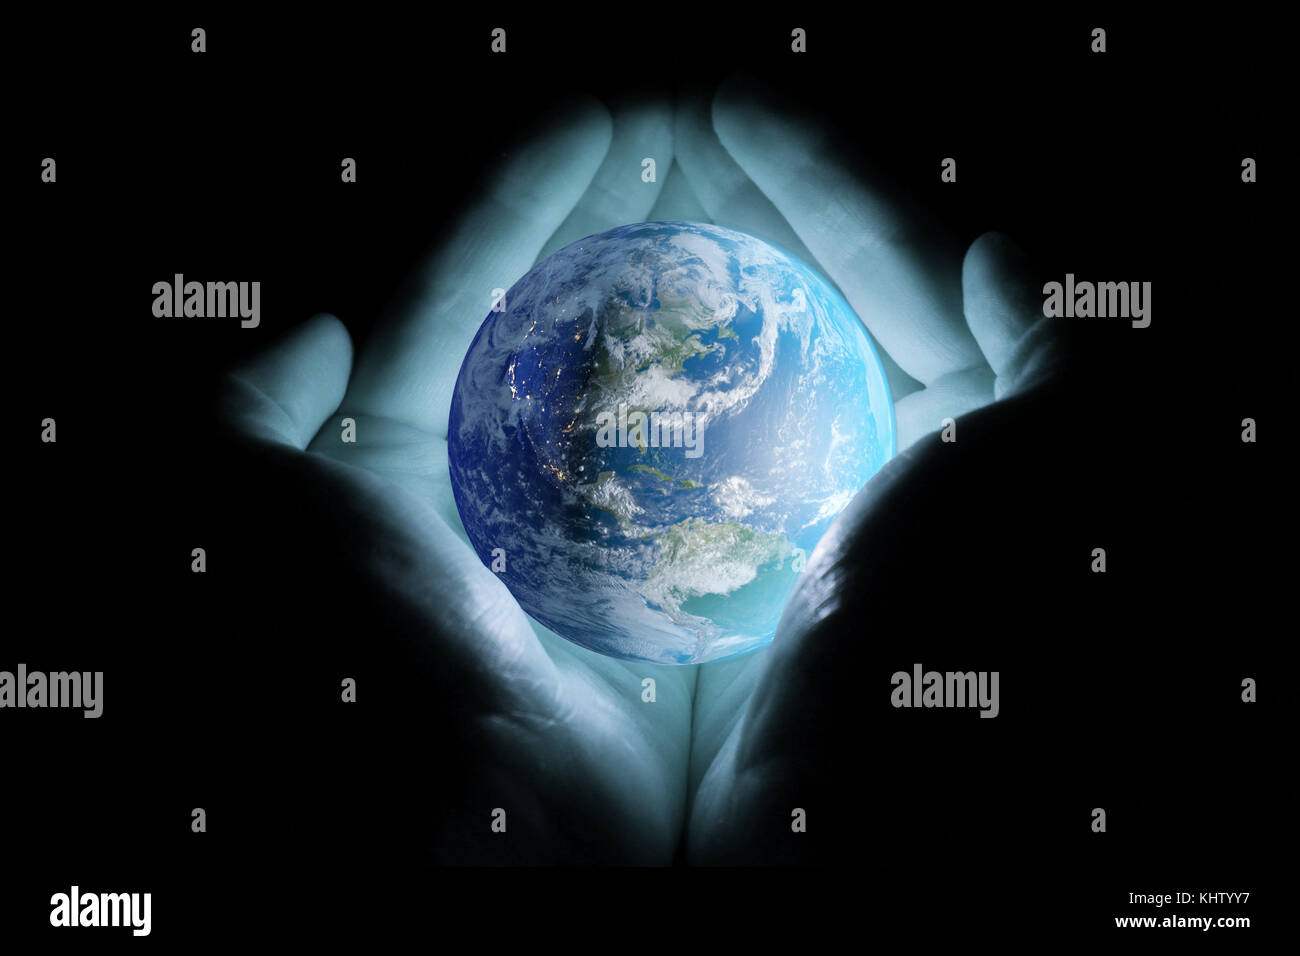 Männer Hände, die den Planeten Erde gedreht, um die Kontinente von Nord- und Südamerika mit einem Blau auf schwarzem Hintergrund. Stockfoto